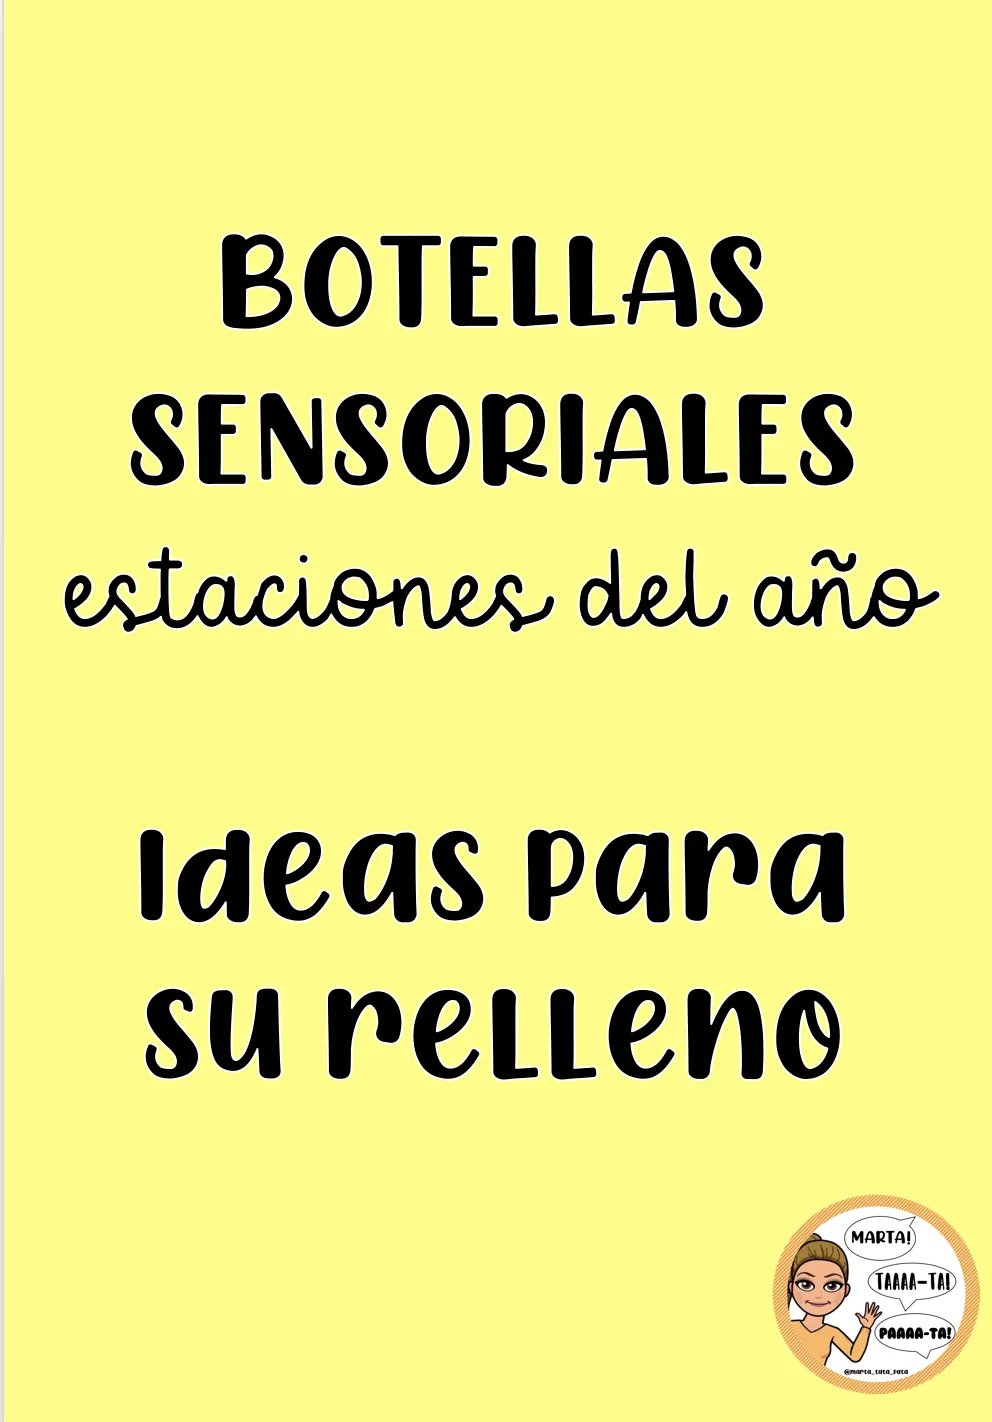 Ideas para el relleno de botellas sensoriales. Estaciones del año